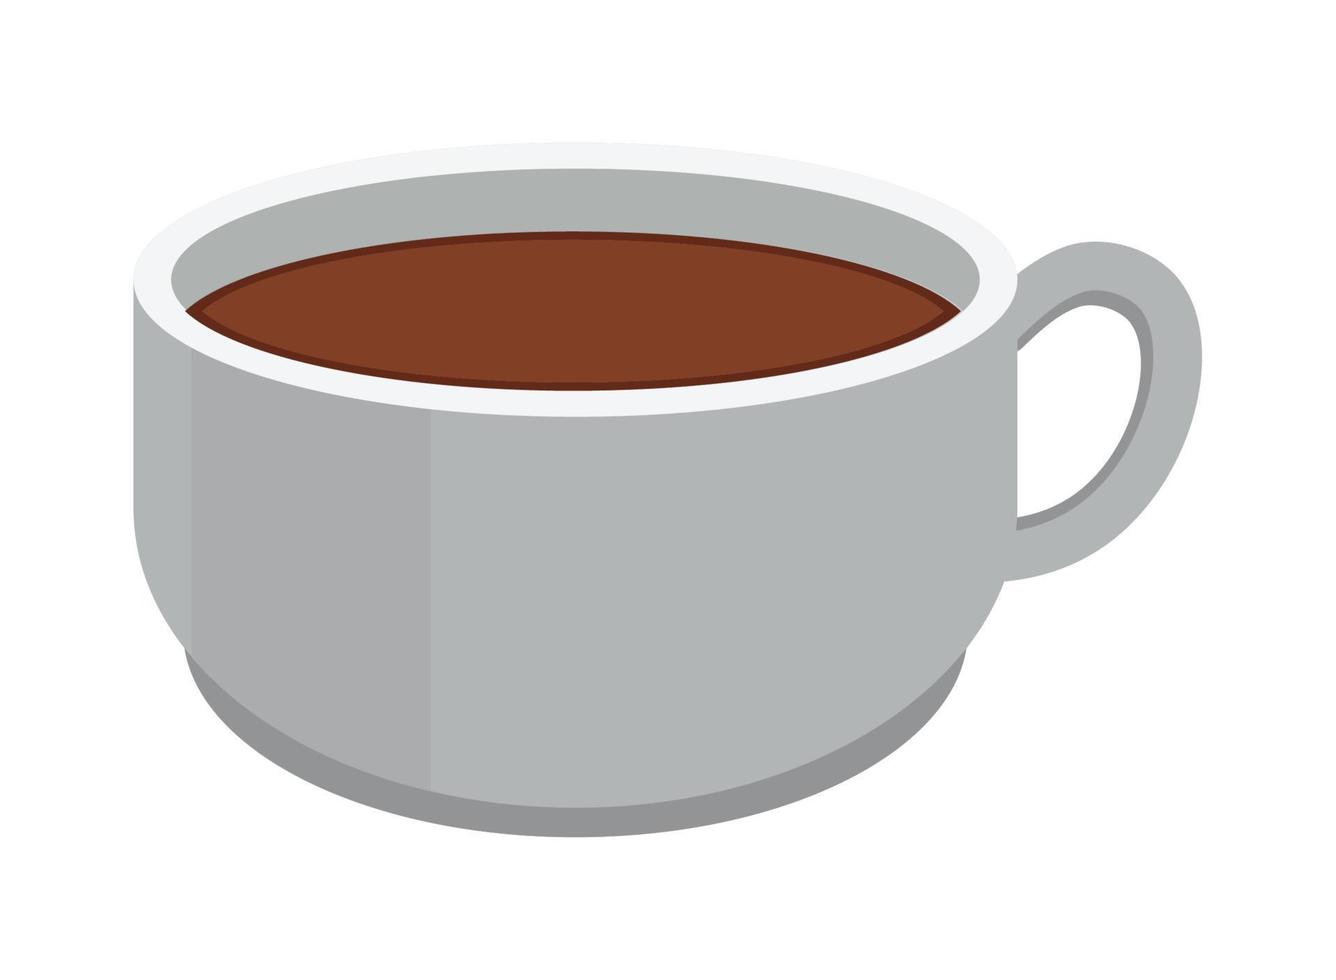 ícone da xícara de café vetor